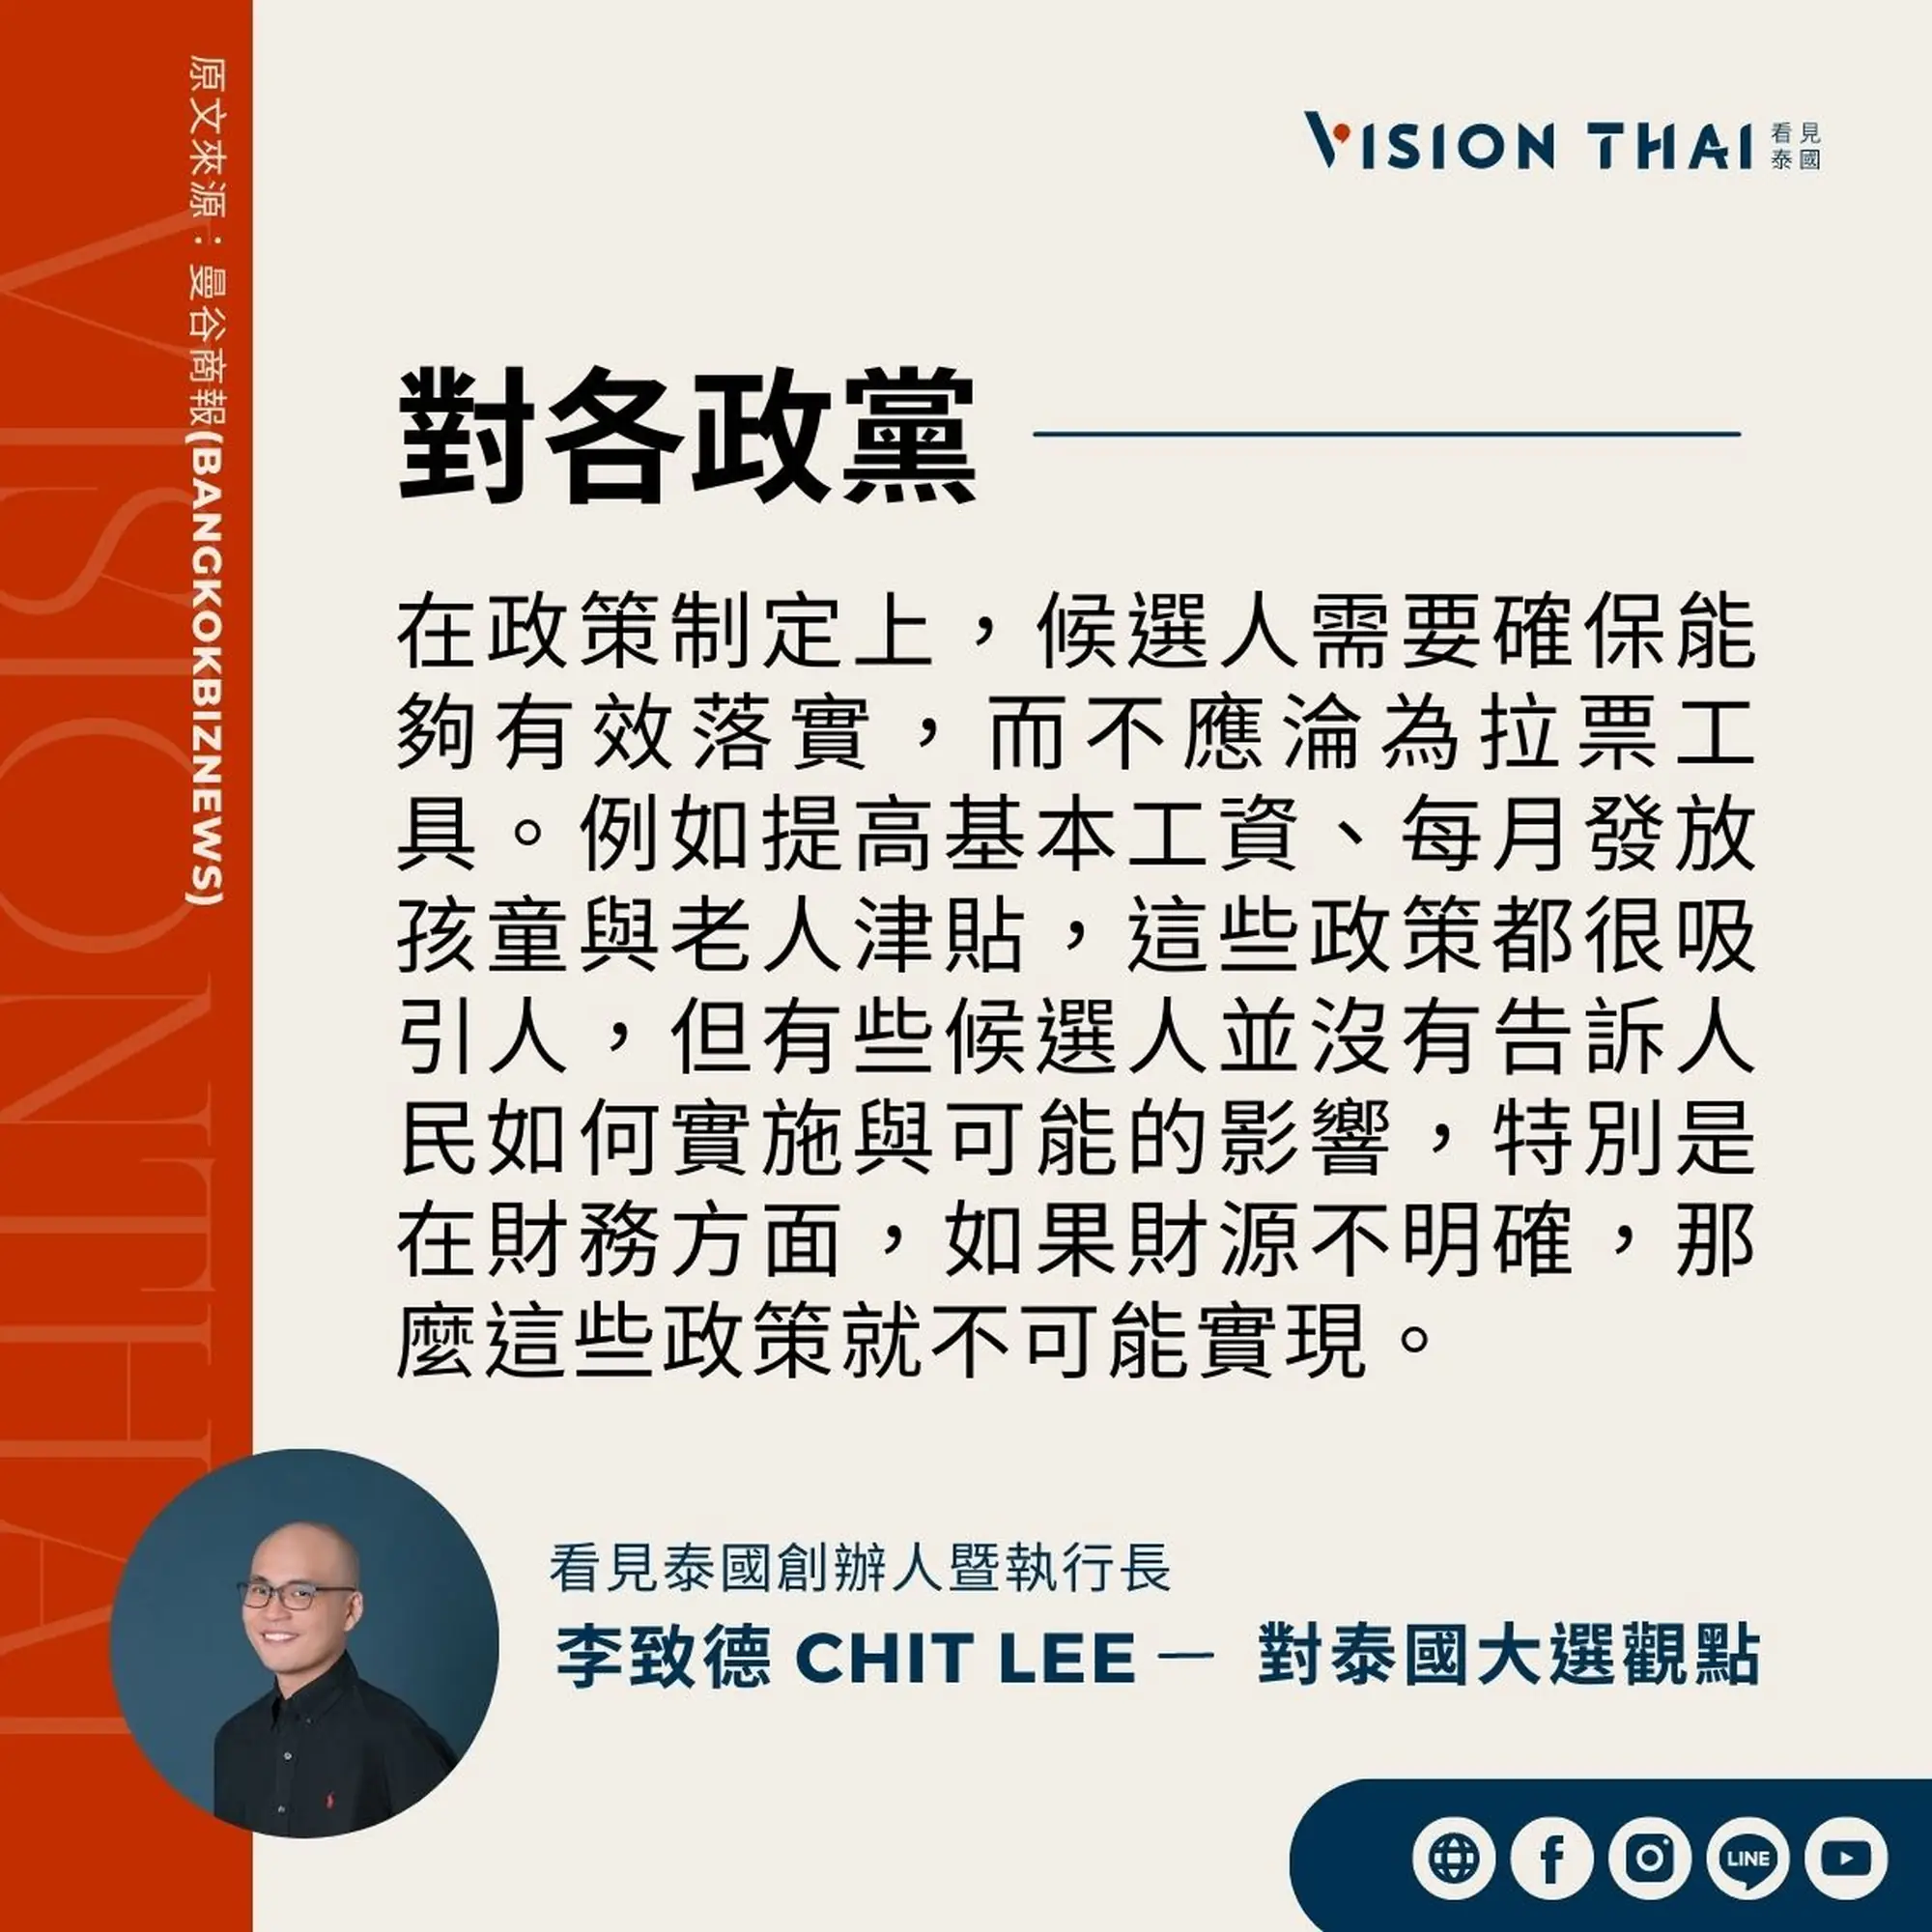 《曼谷商報》採訪Vision Thai 看見泰國媒體創辦人暨執行長李致德(Chit Lee)對泰國各政黨的期許（來源：看見泰國製圖）